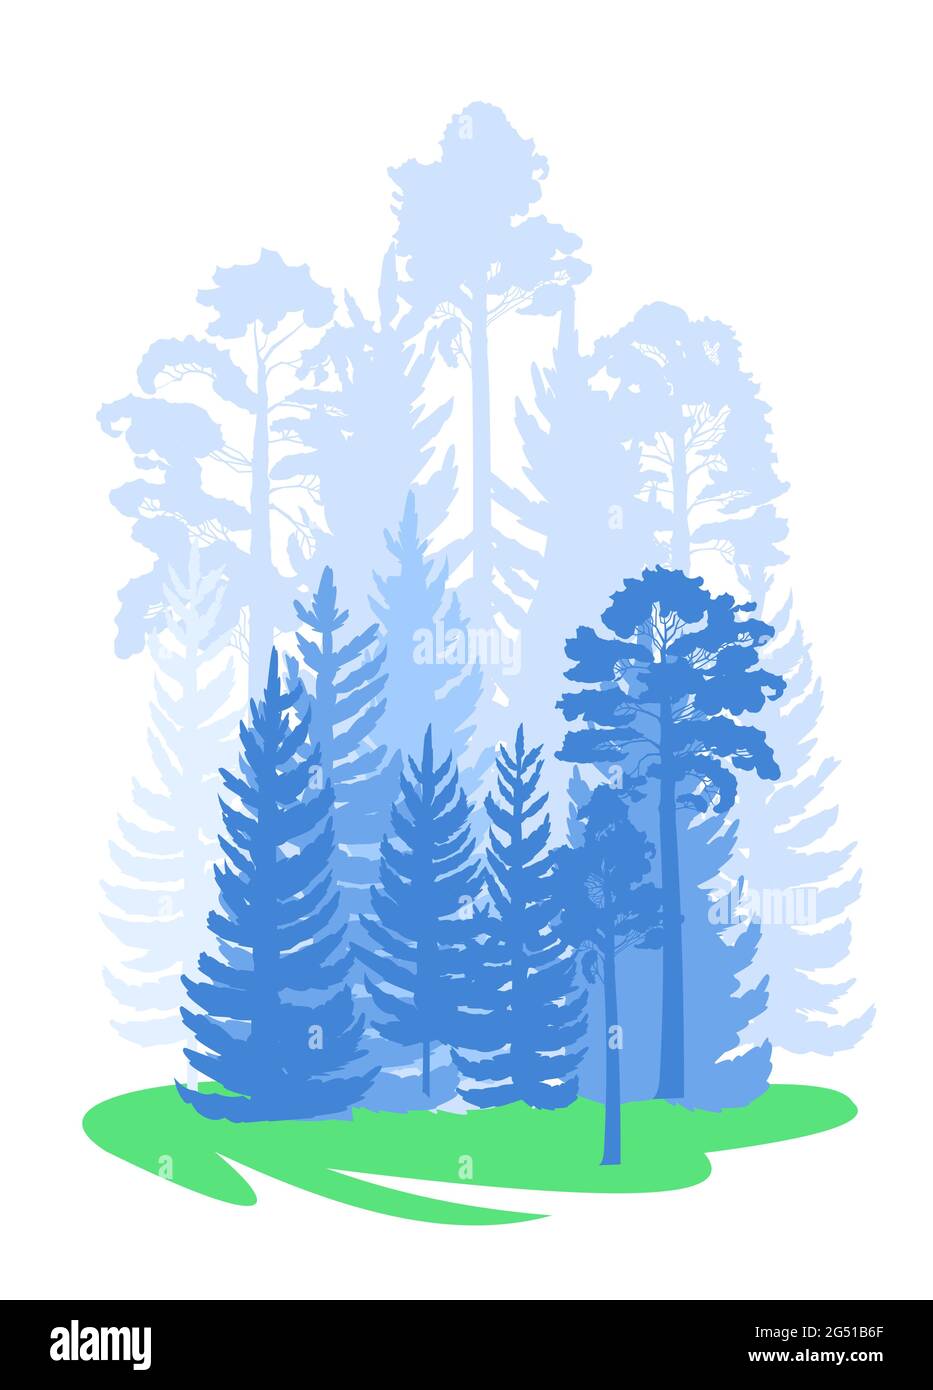 Wald Silhouette Szene. Landschaft mit Nadelbäumen. Wunderschöne blaue Aussicht. Kiefern- und Fichtenbäume. Sommer Natur. Isolierter Illustrationsvektor Stock Vektor